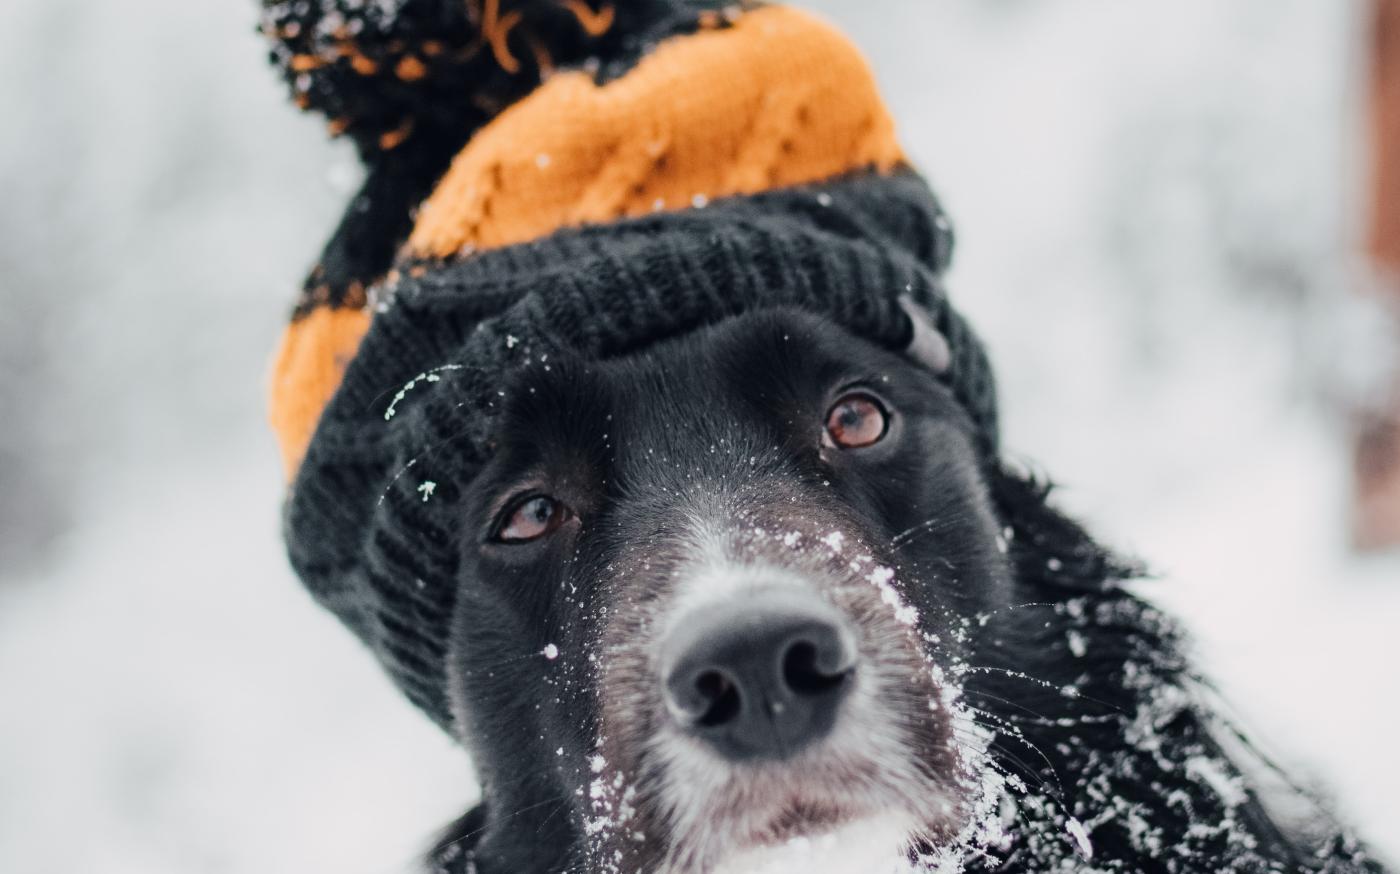 adult short-coated dog sitting snow while wearing orange and black hat by Tadeusz Lakota courtesy of Unsplash.